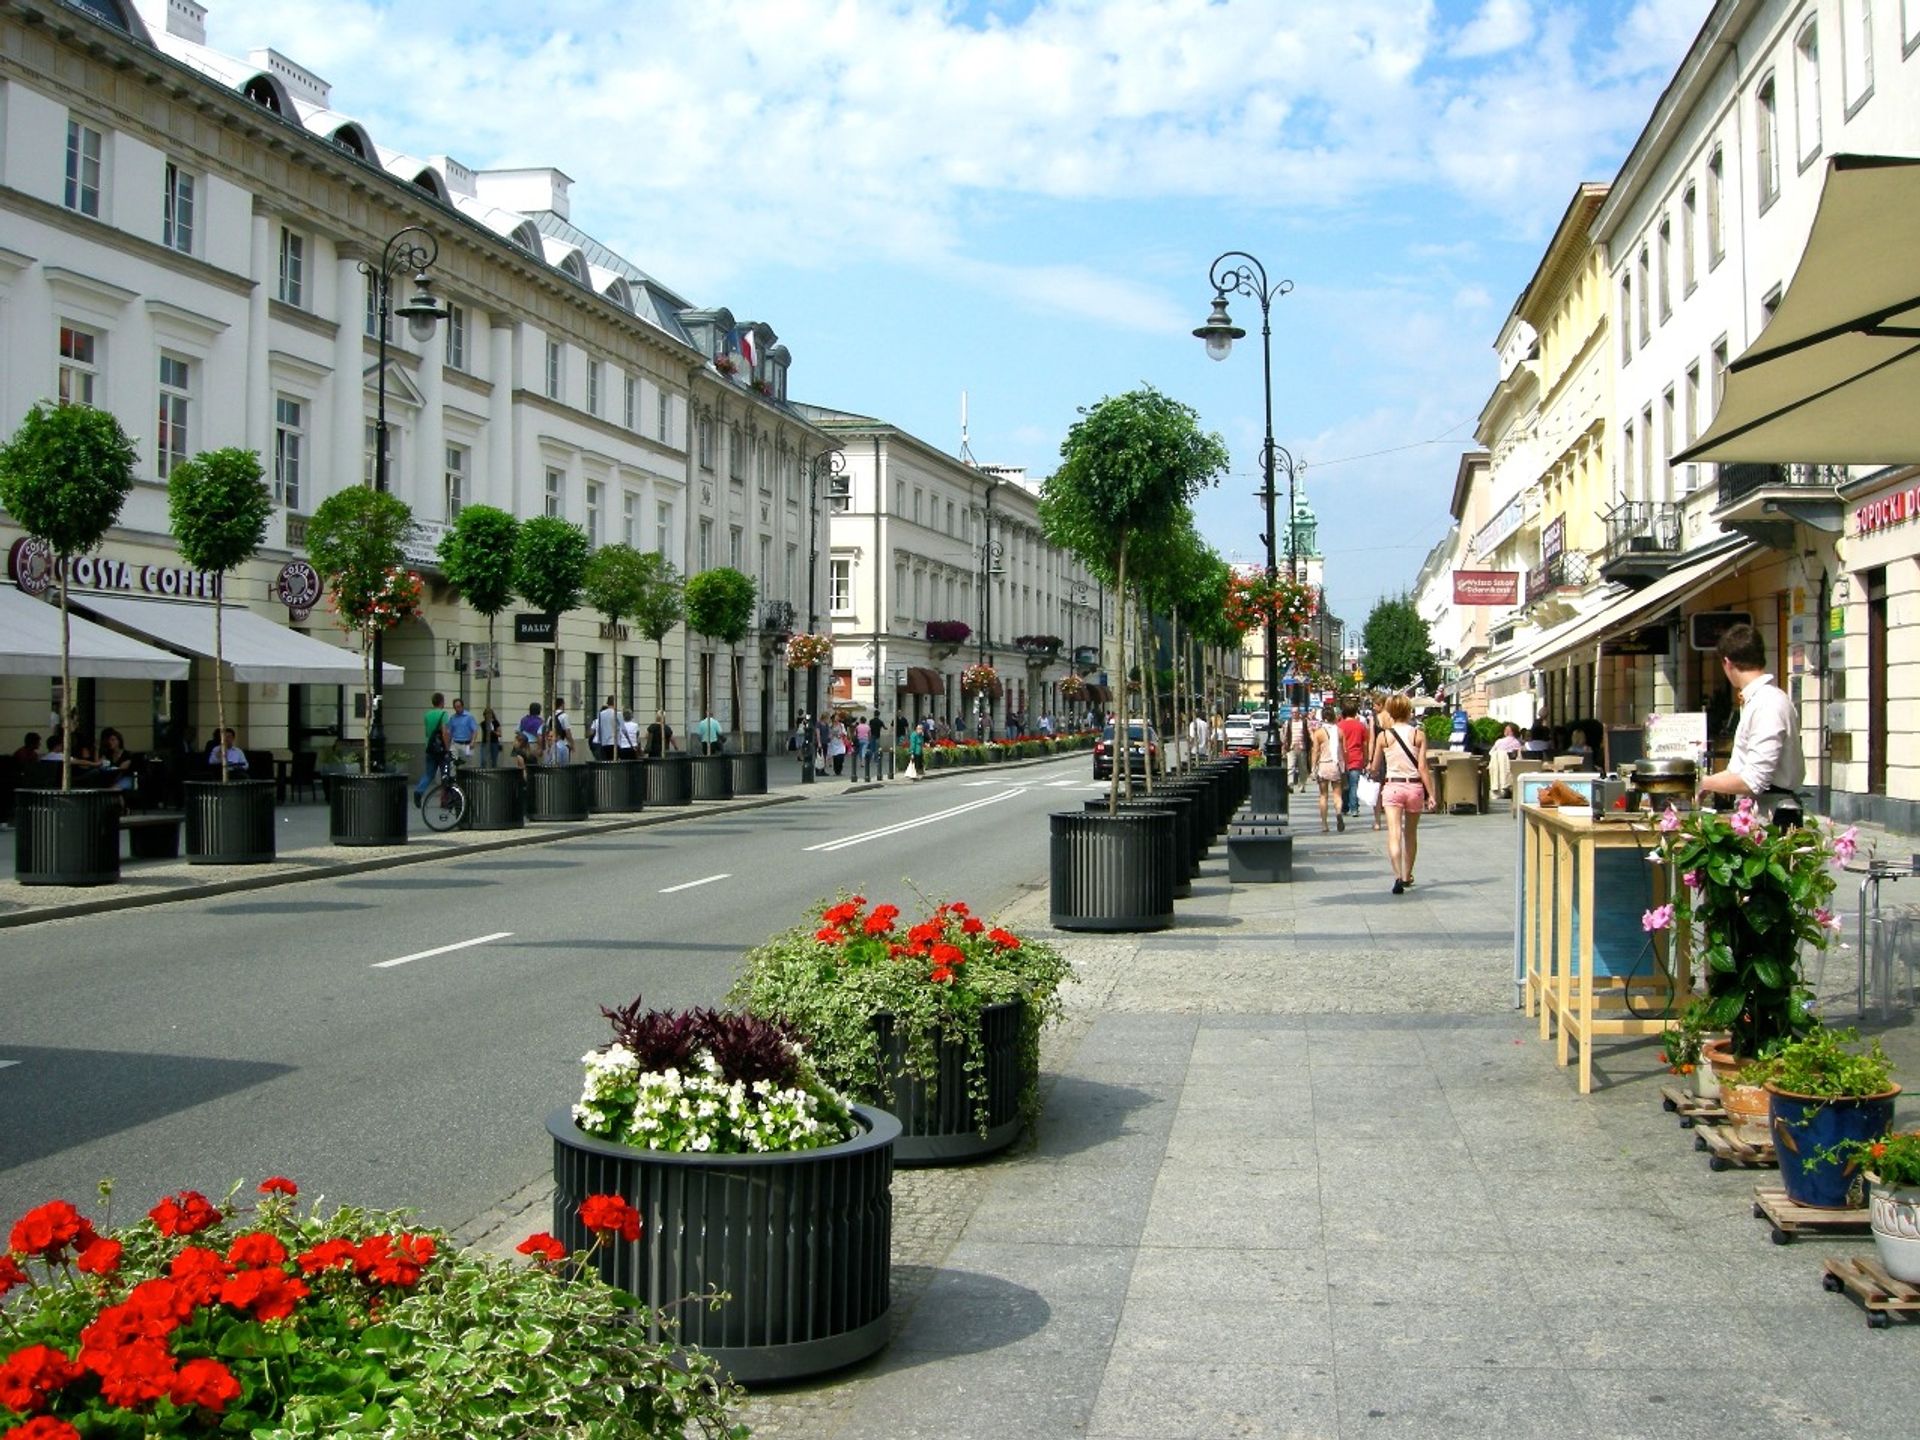  Nowy Świat najdroższą ulicą handlową w Polsce i 45. na świecie